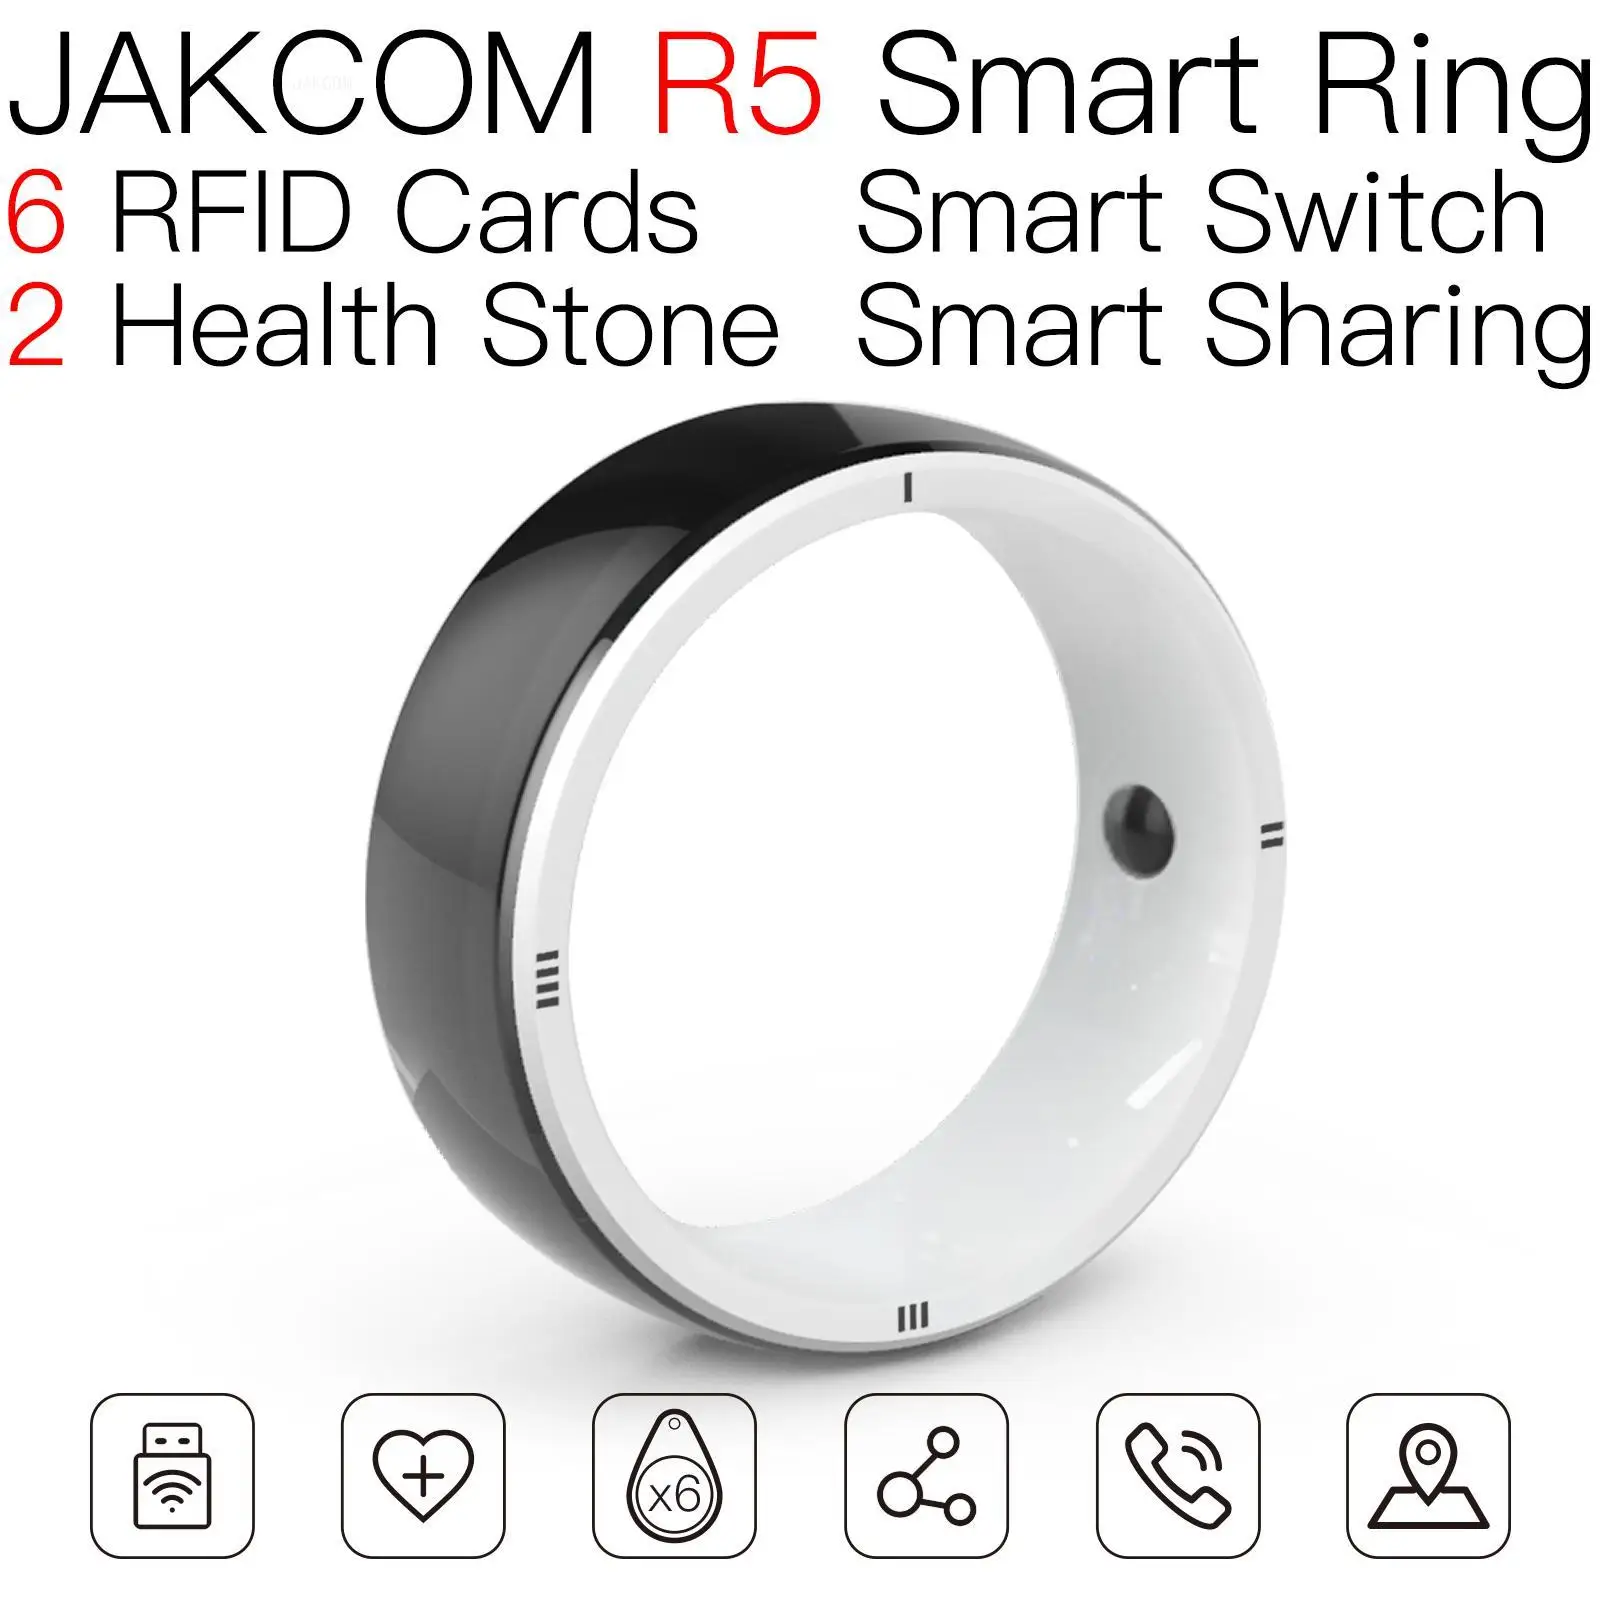 

Умное кольцо JAKCOM R5, новый продукт как микрочип, животное, неиспользованная чистая карта, Италия, pet id эмблема amibo lege metalen